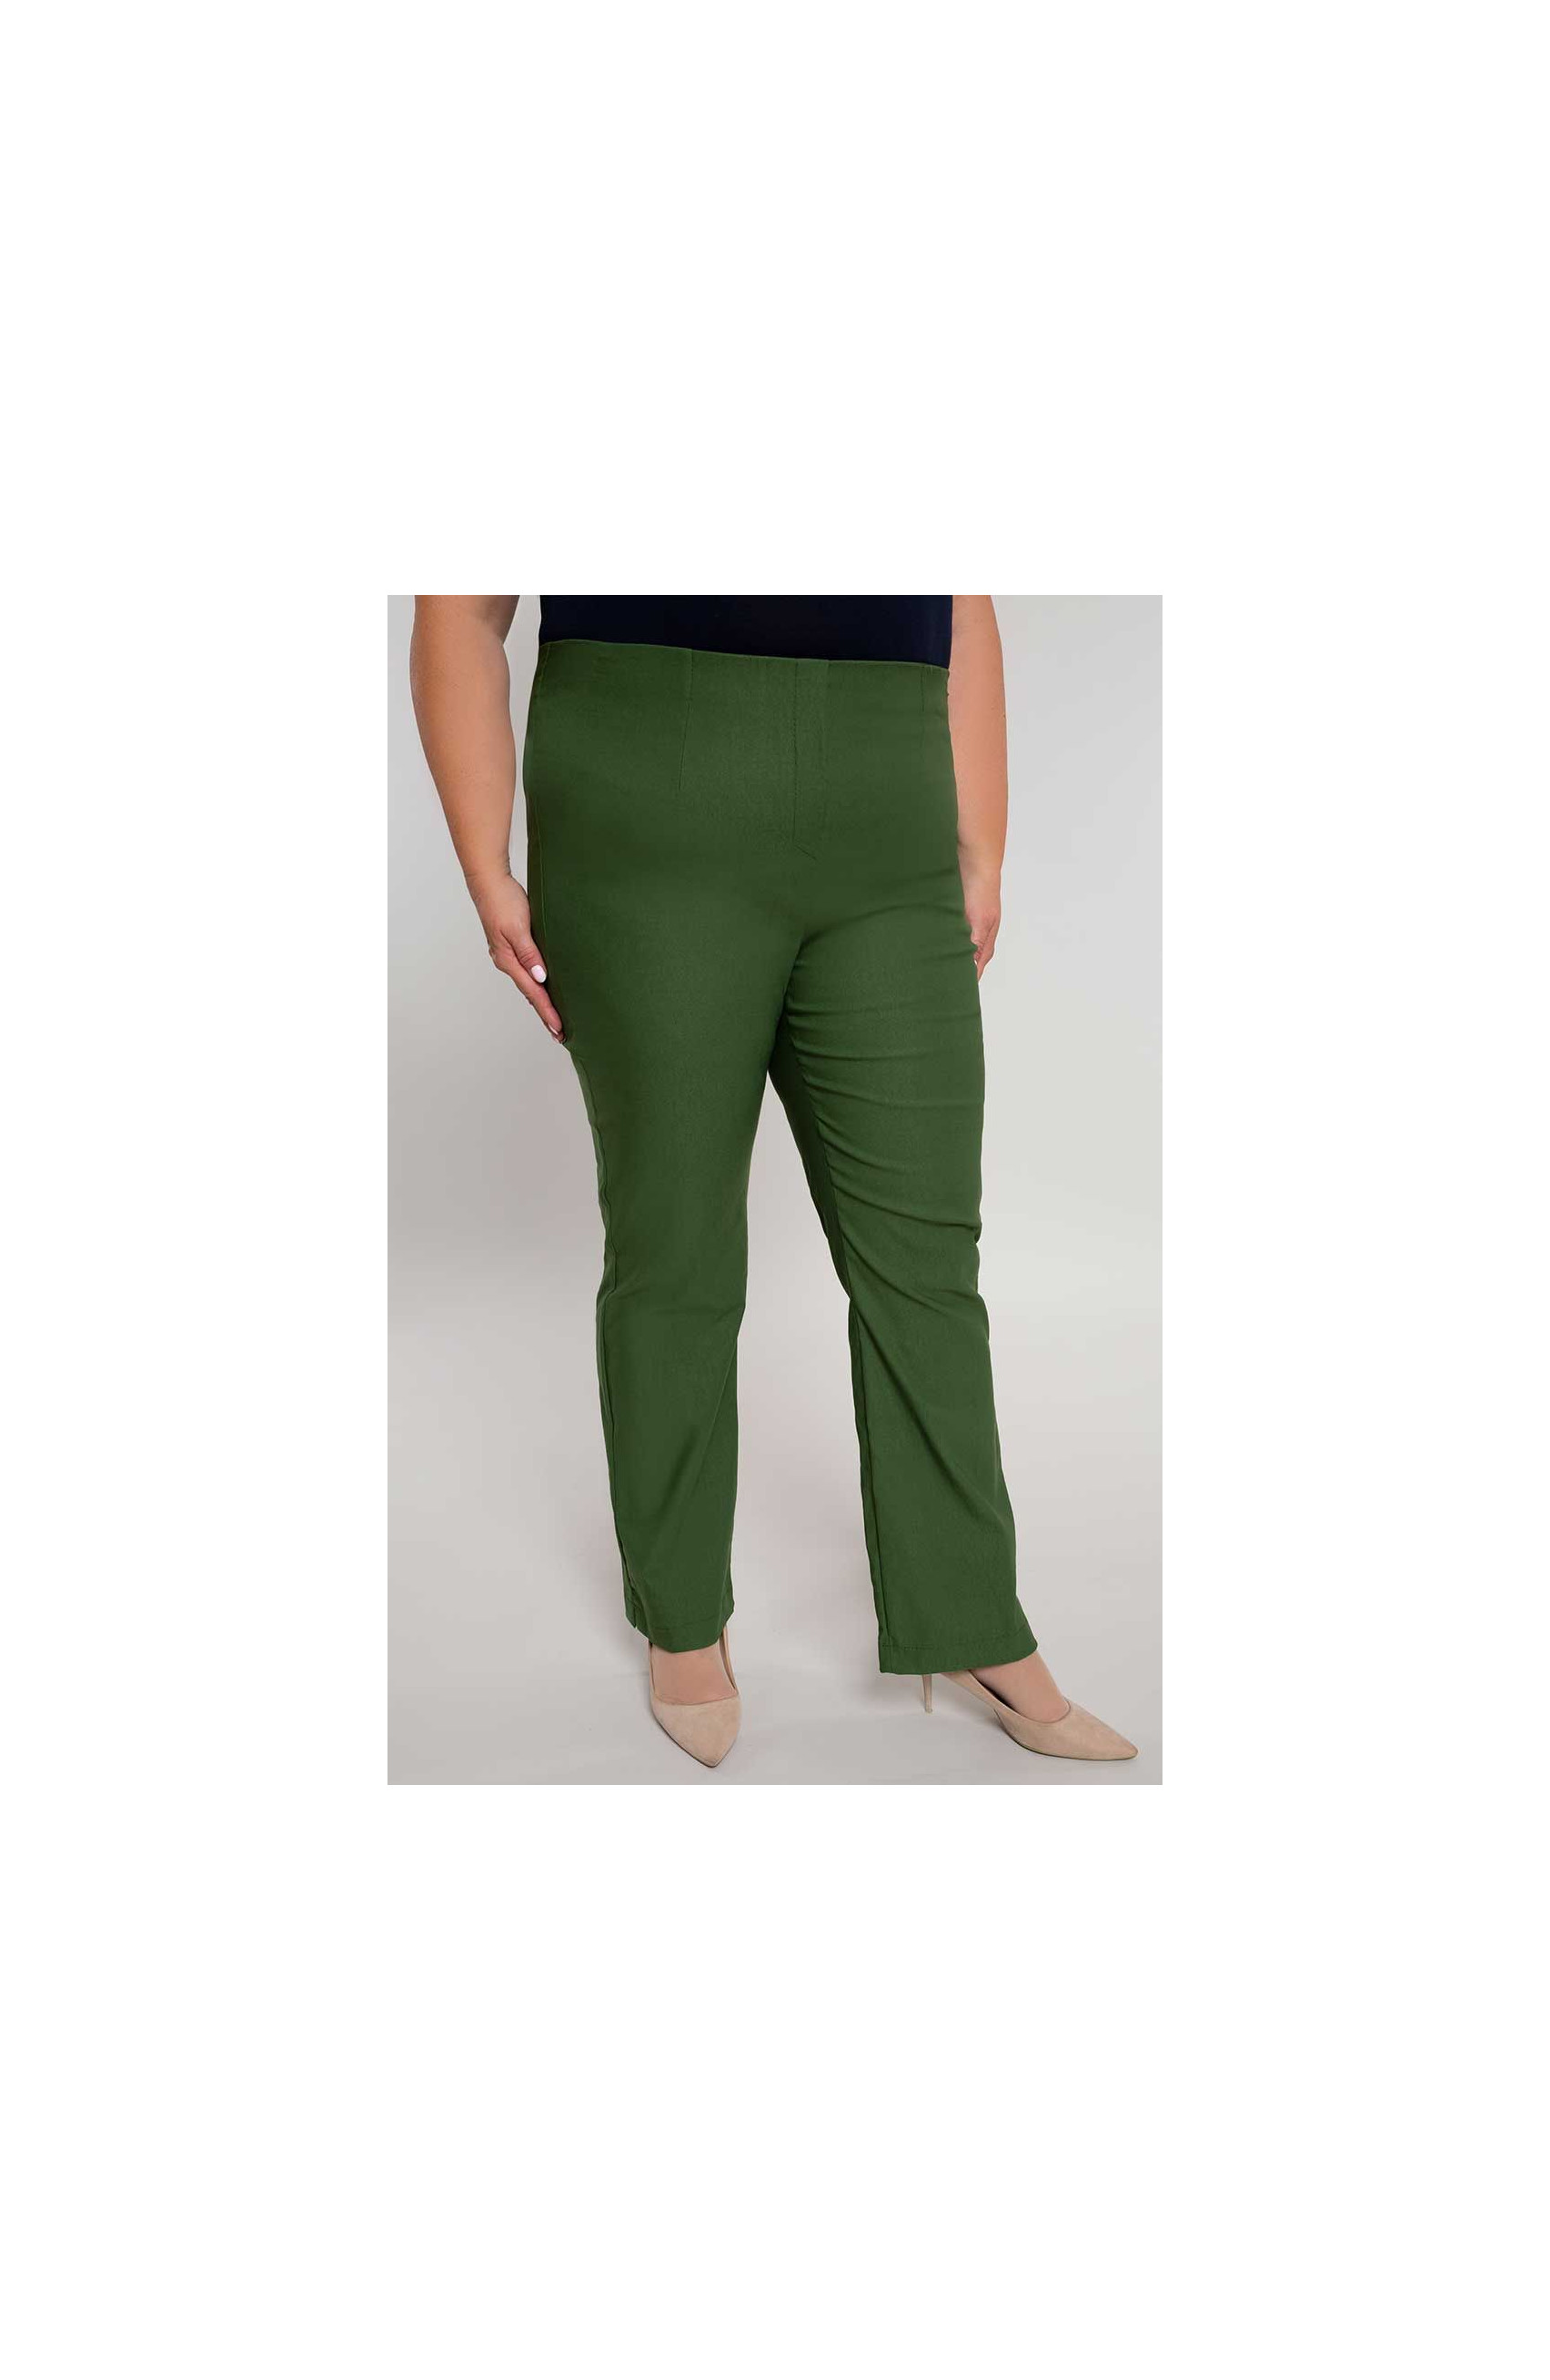 Dlhšie rovné nohavice v olivovo zelenej farbe